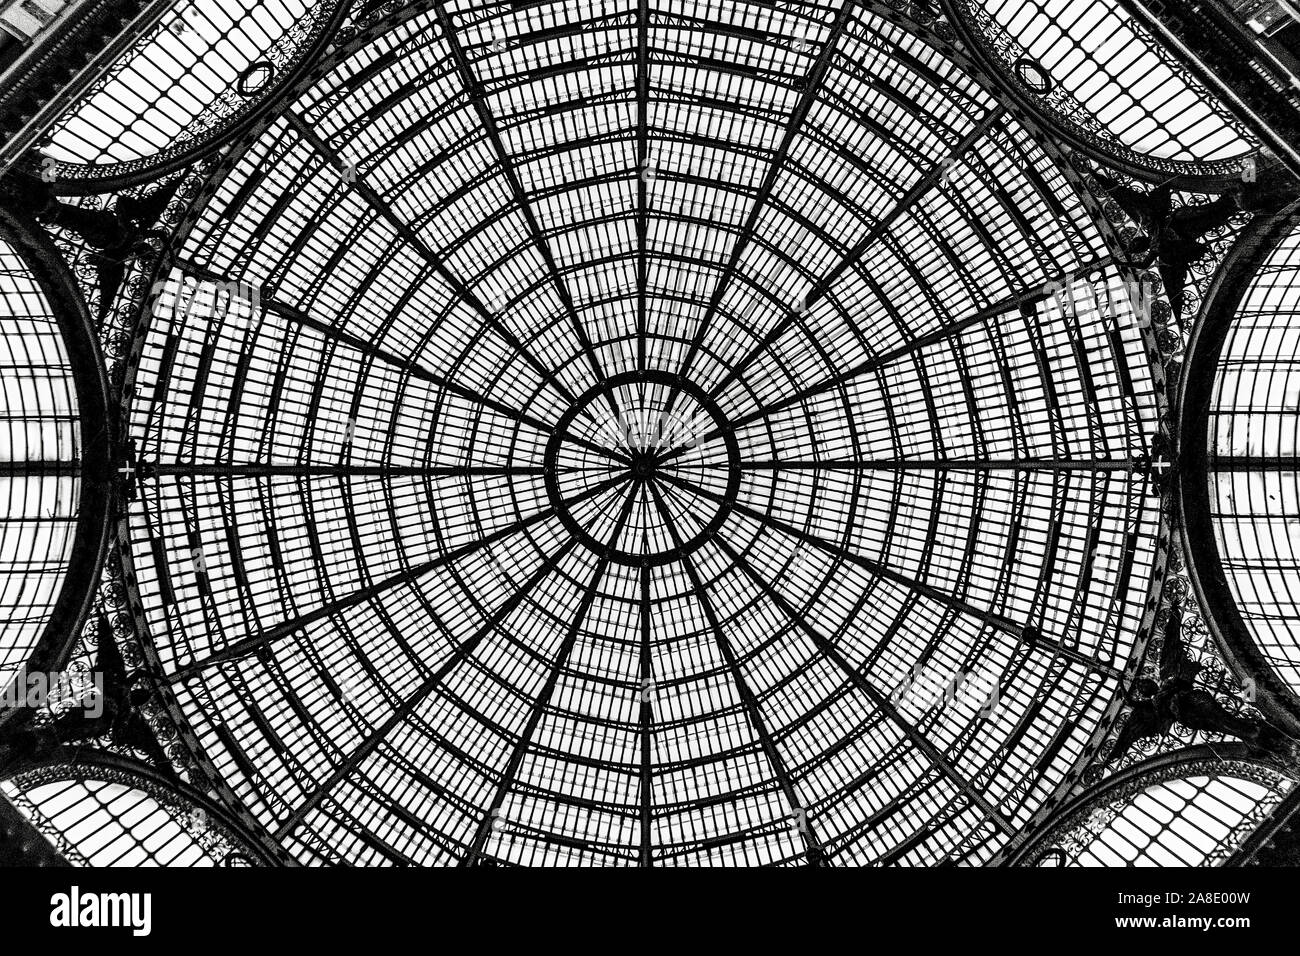 Ein Detail der Geometrien der zentralen Kuppel der Umberto I Galerie in Neapel, Italien. Stockfoto